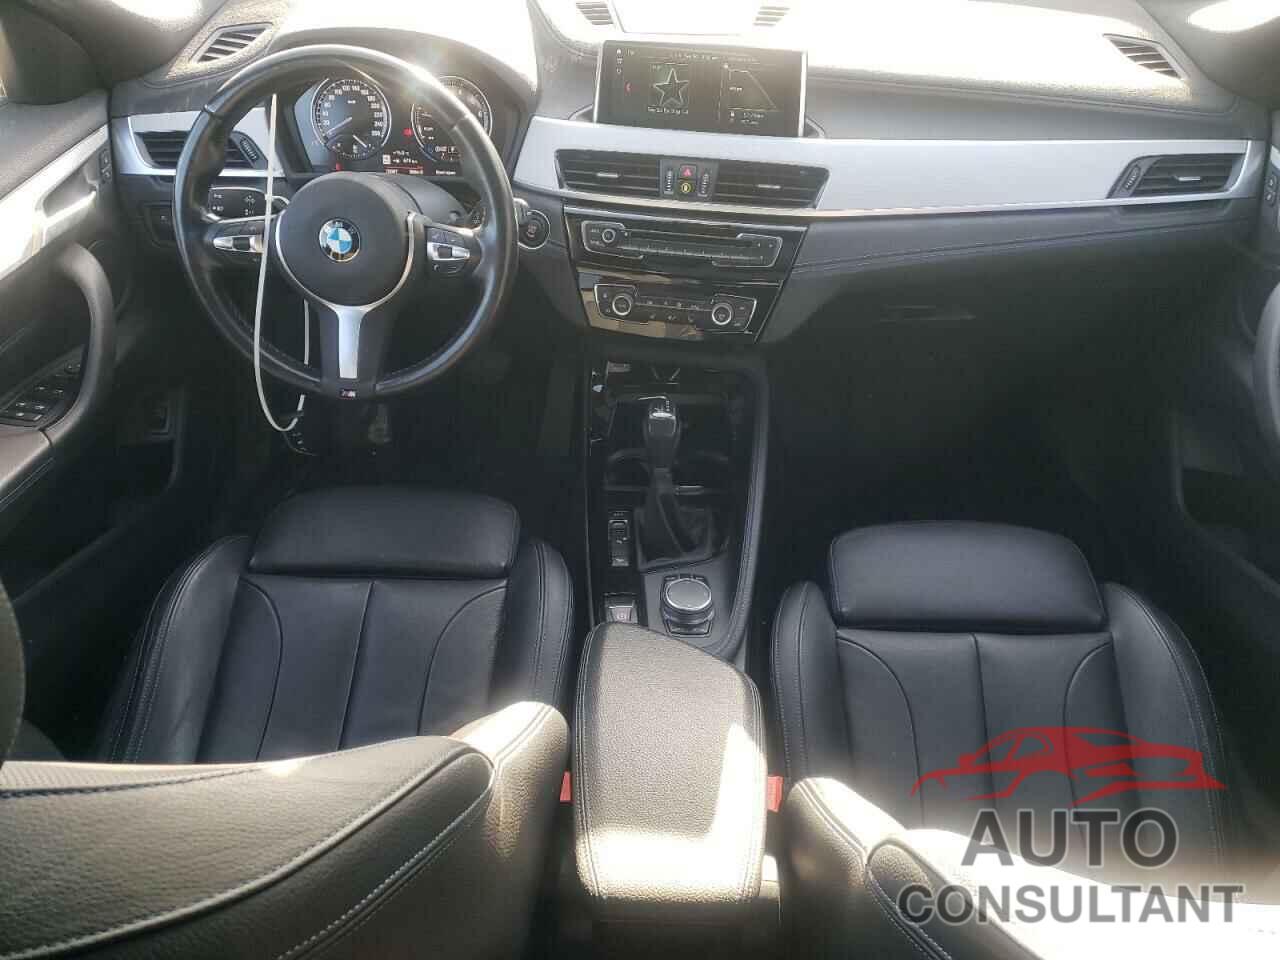 BMW X2 2018 - WBXYJ5C31JEF77777